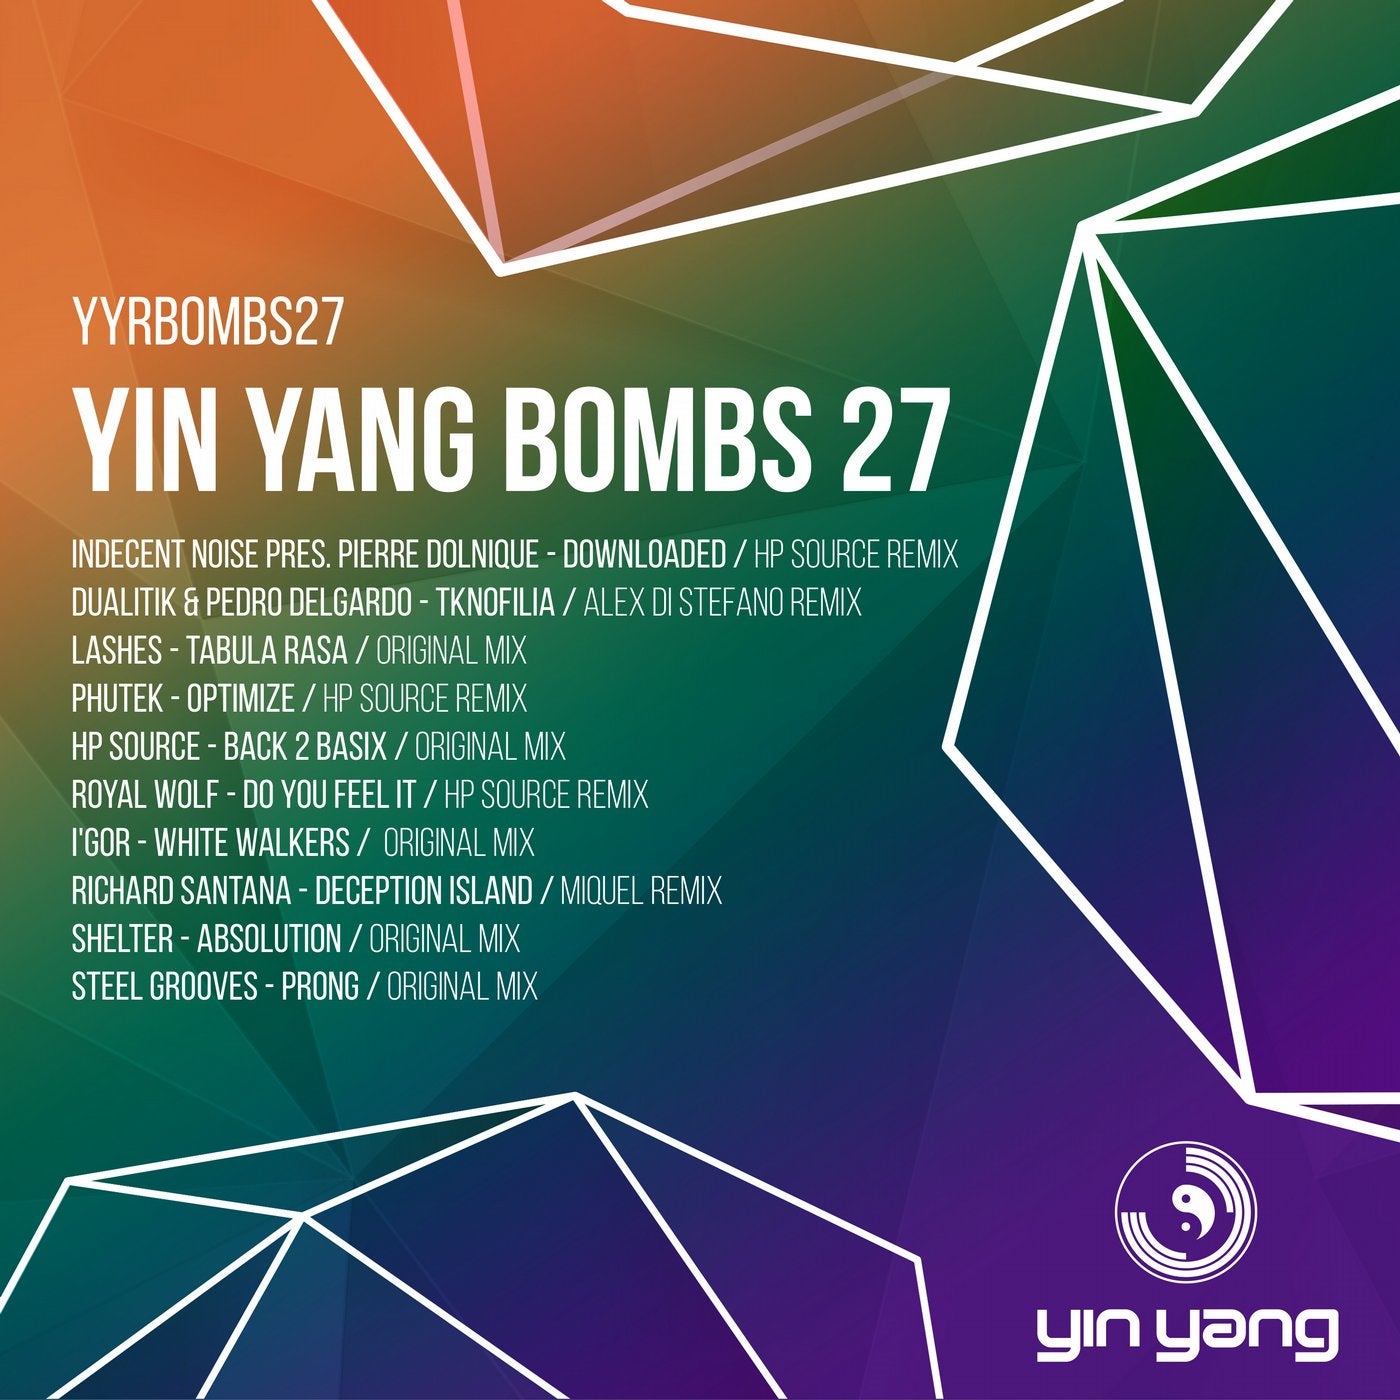 Yin Yang Bombs: Compilation 27